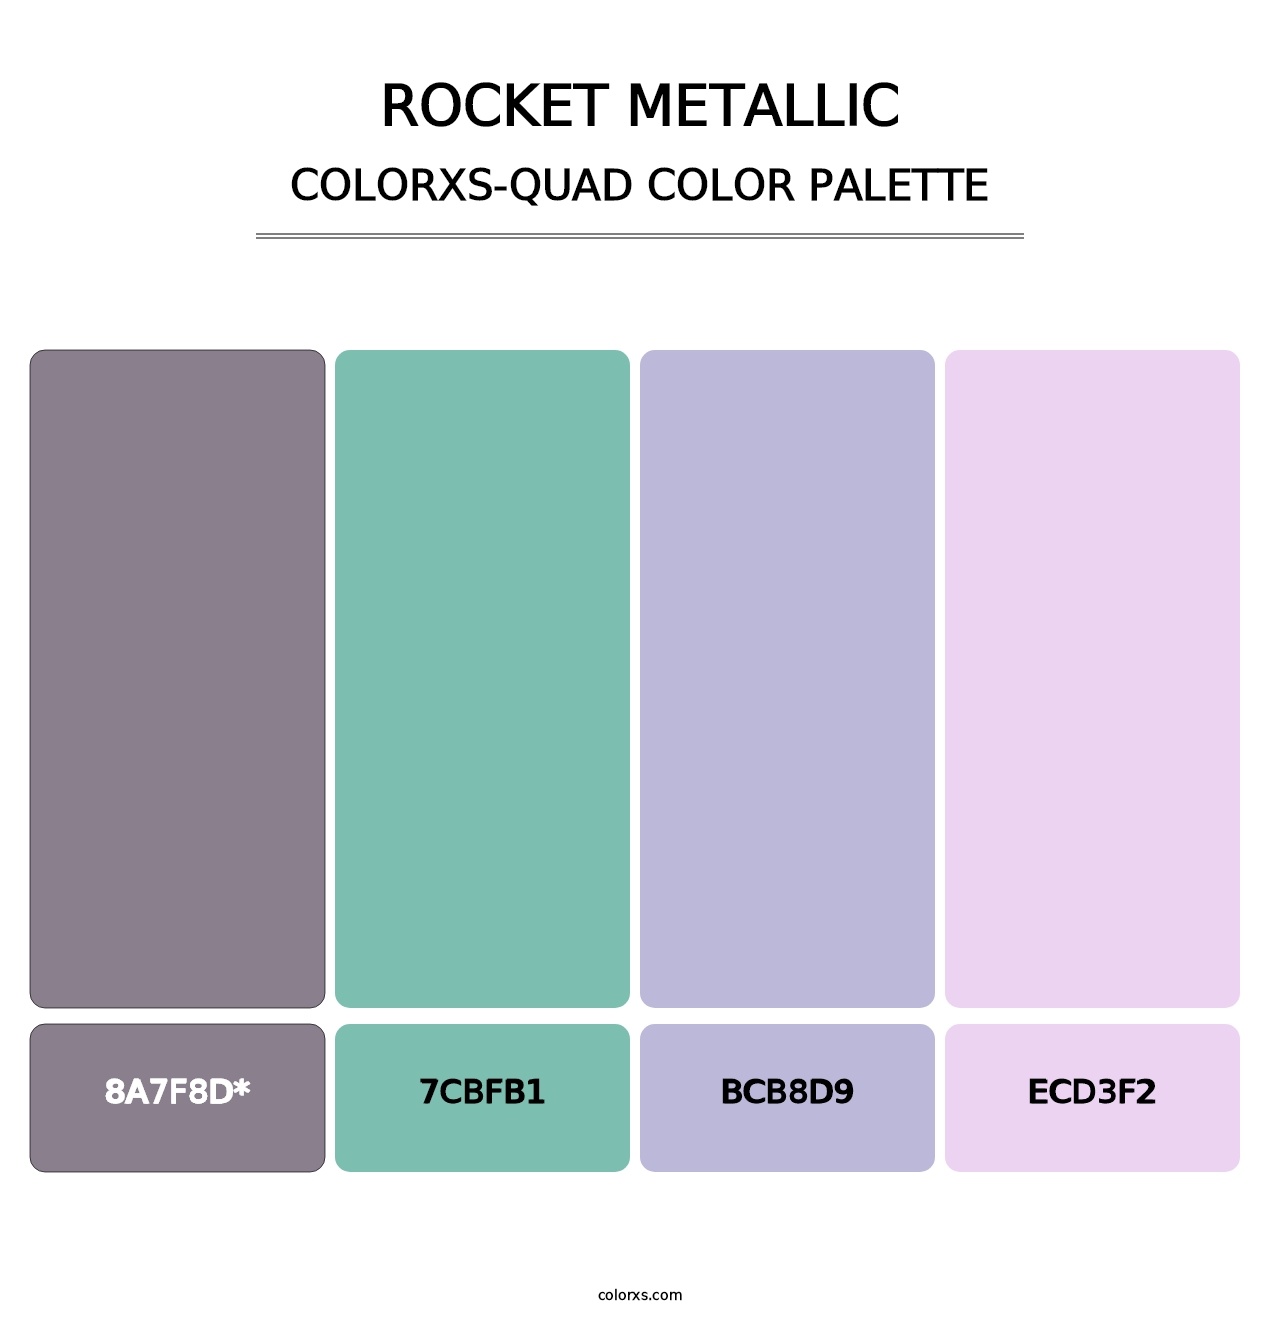 Rocket Metallic - Colorxs Quad Palette